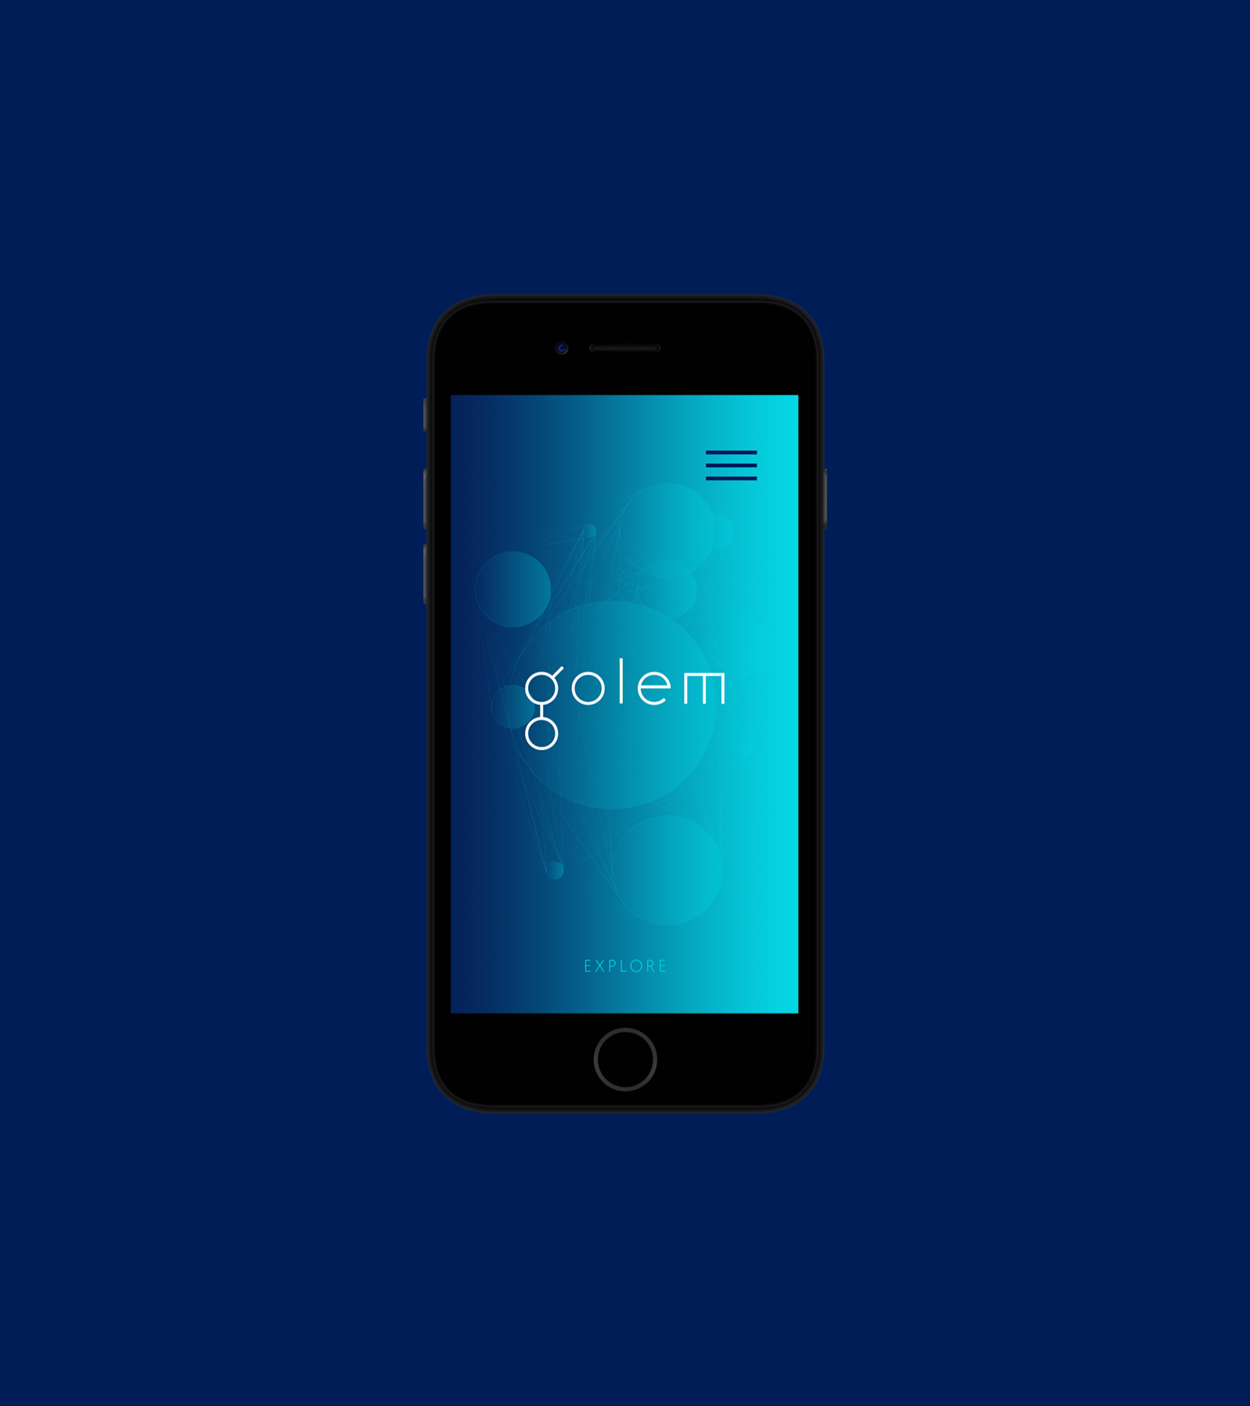 Golem (2015-2017) - The Codeine Design